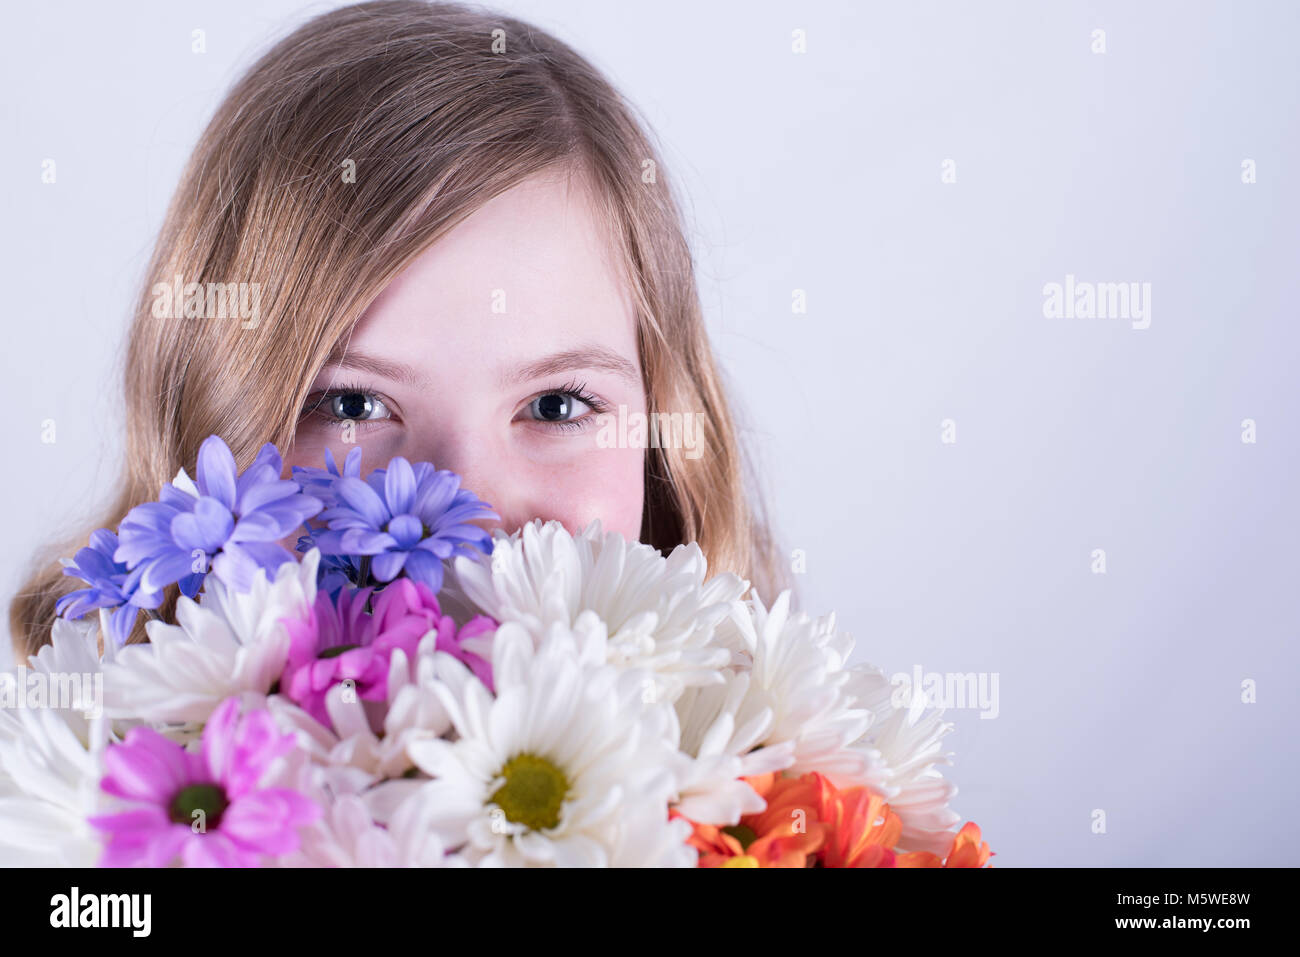 Head shot of 12-year-old fille avec de longs cheveux blond sale, holding bouquet de marguerites colorées sur la face inférieure, la bouche couverte, fond blanc Banque D'Images